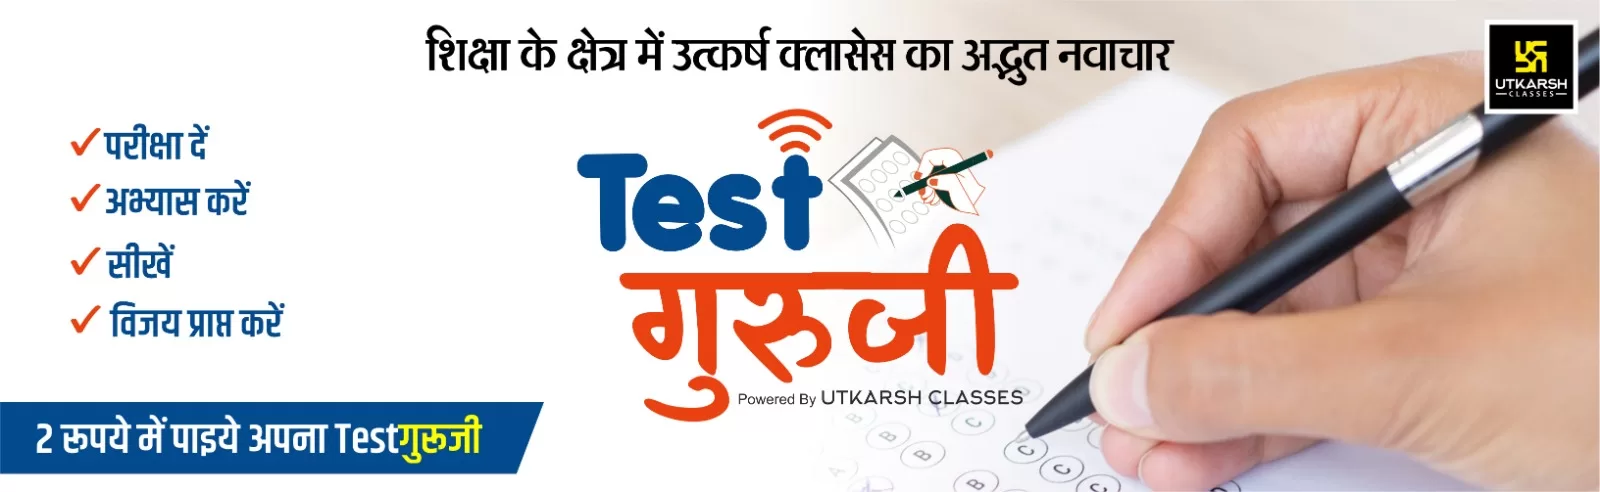 Utkarsh Test Guruji Online Form